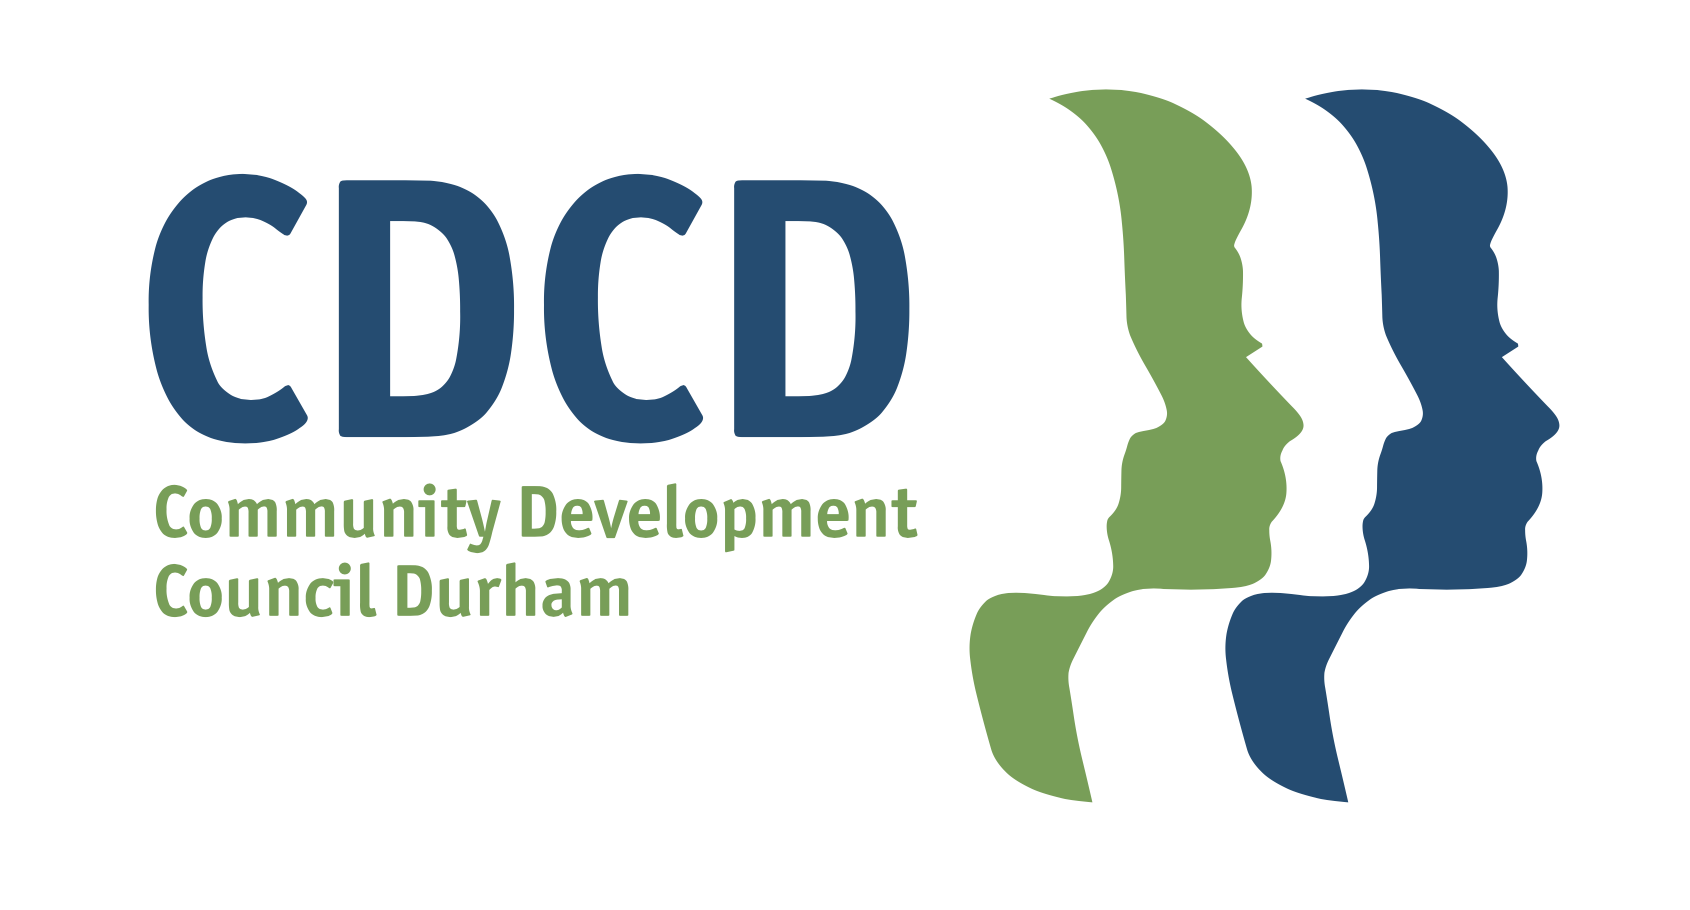 Community Development Council Durham